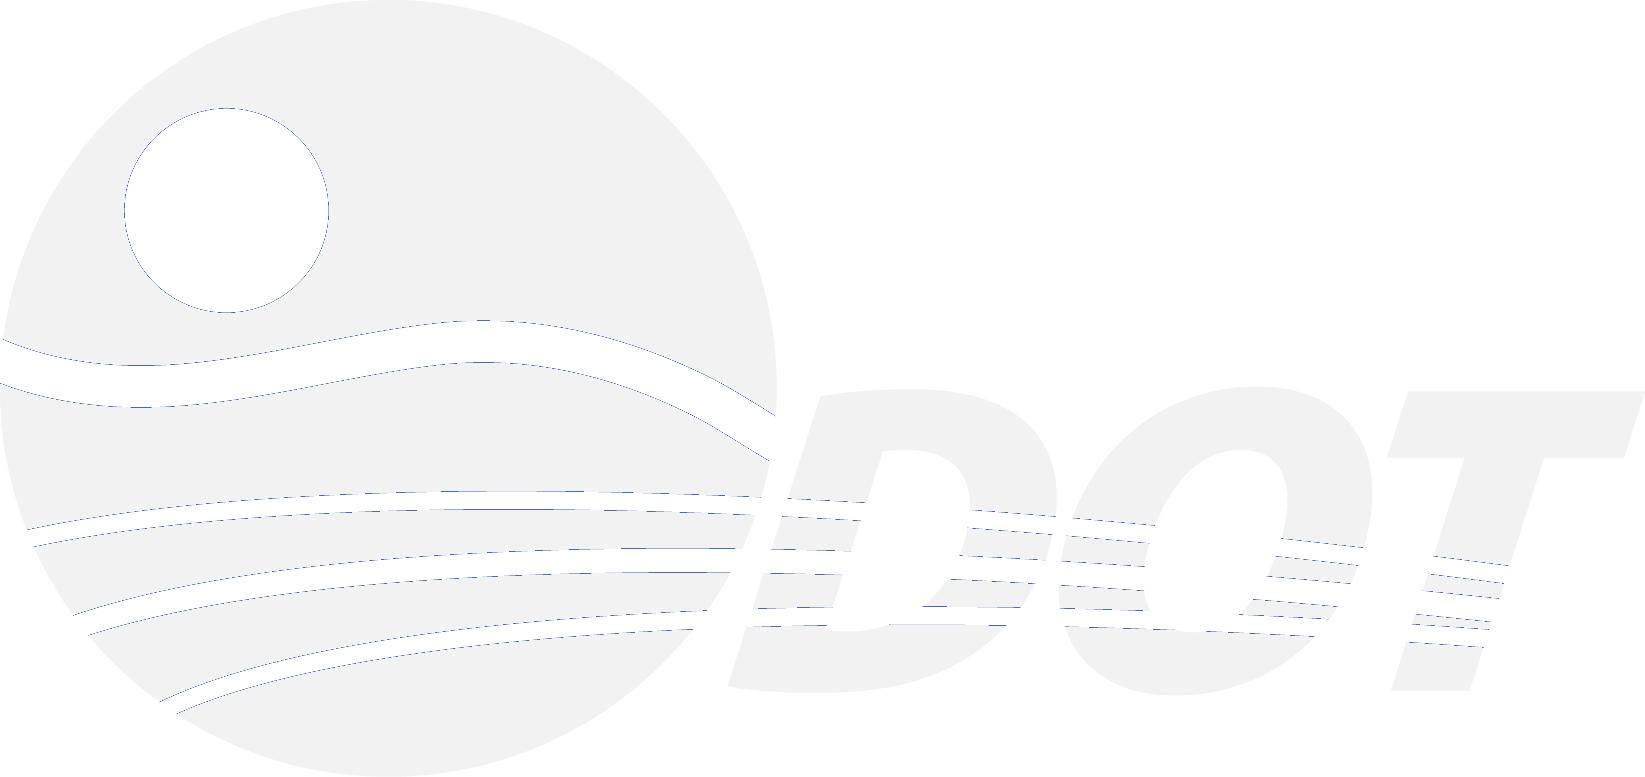 odot_logo (1)